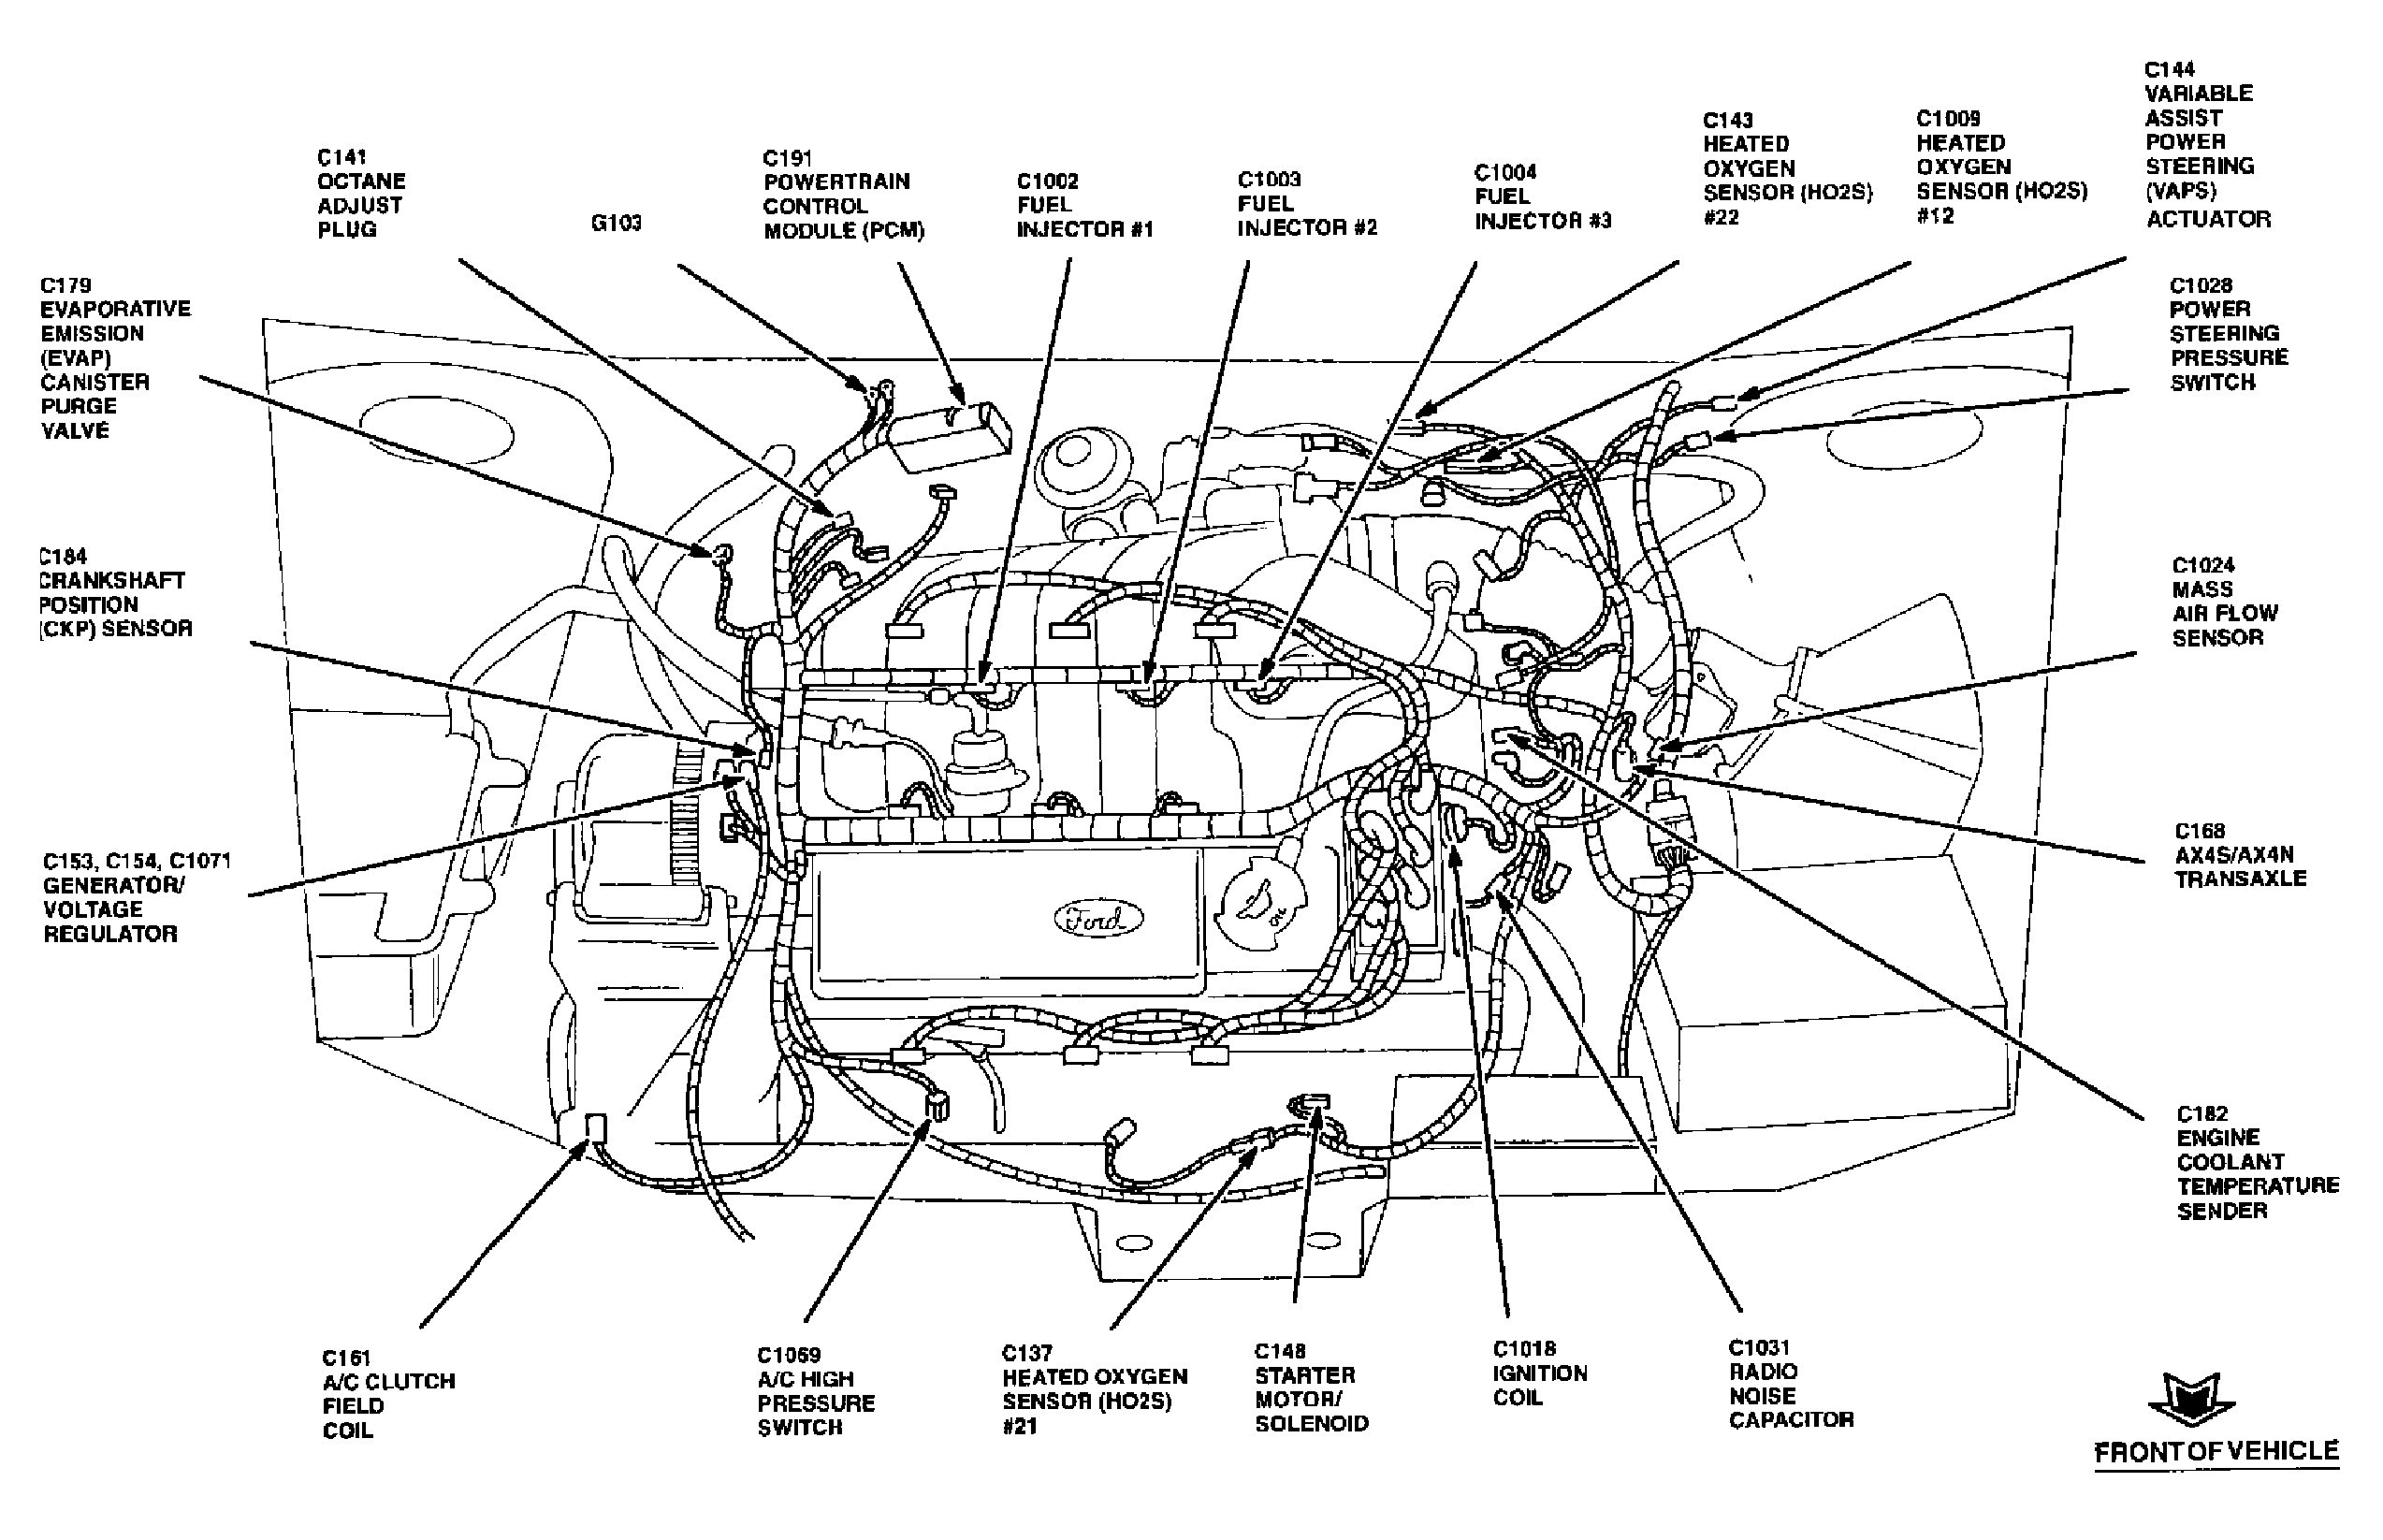 2001 ford Windstar Engine Diagram 1998 ford Taurus Engine Diagram Wiring Diagram New Of 2001 ford Windstar Engine Diagram